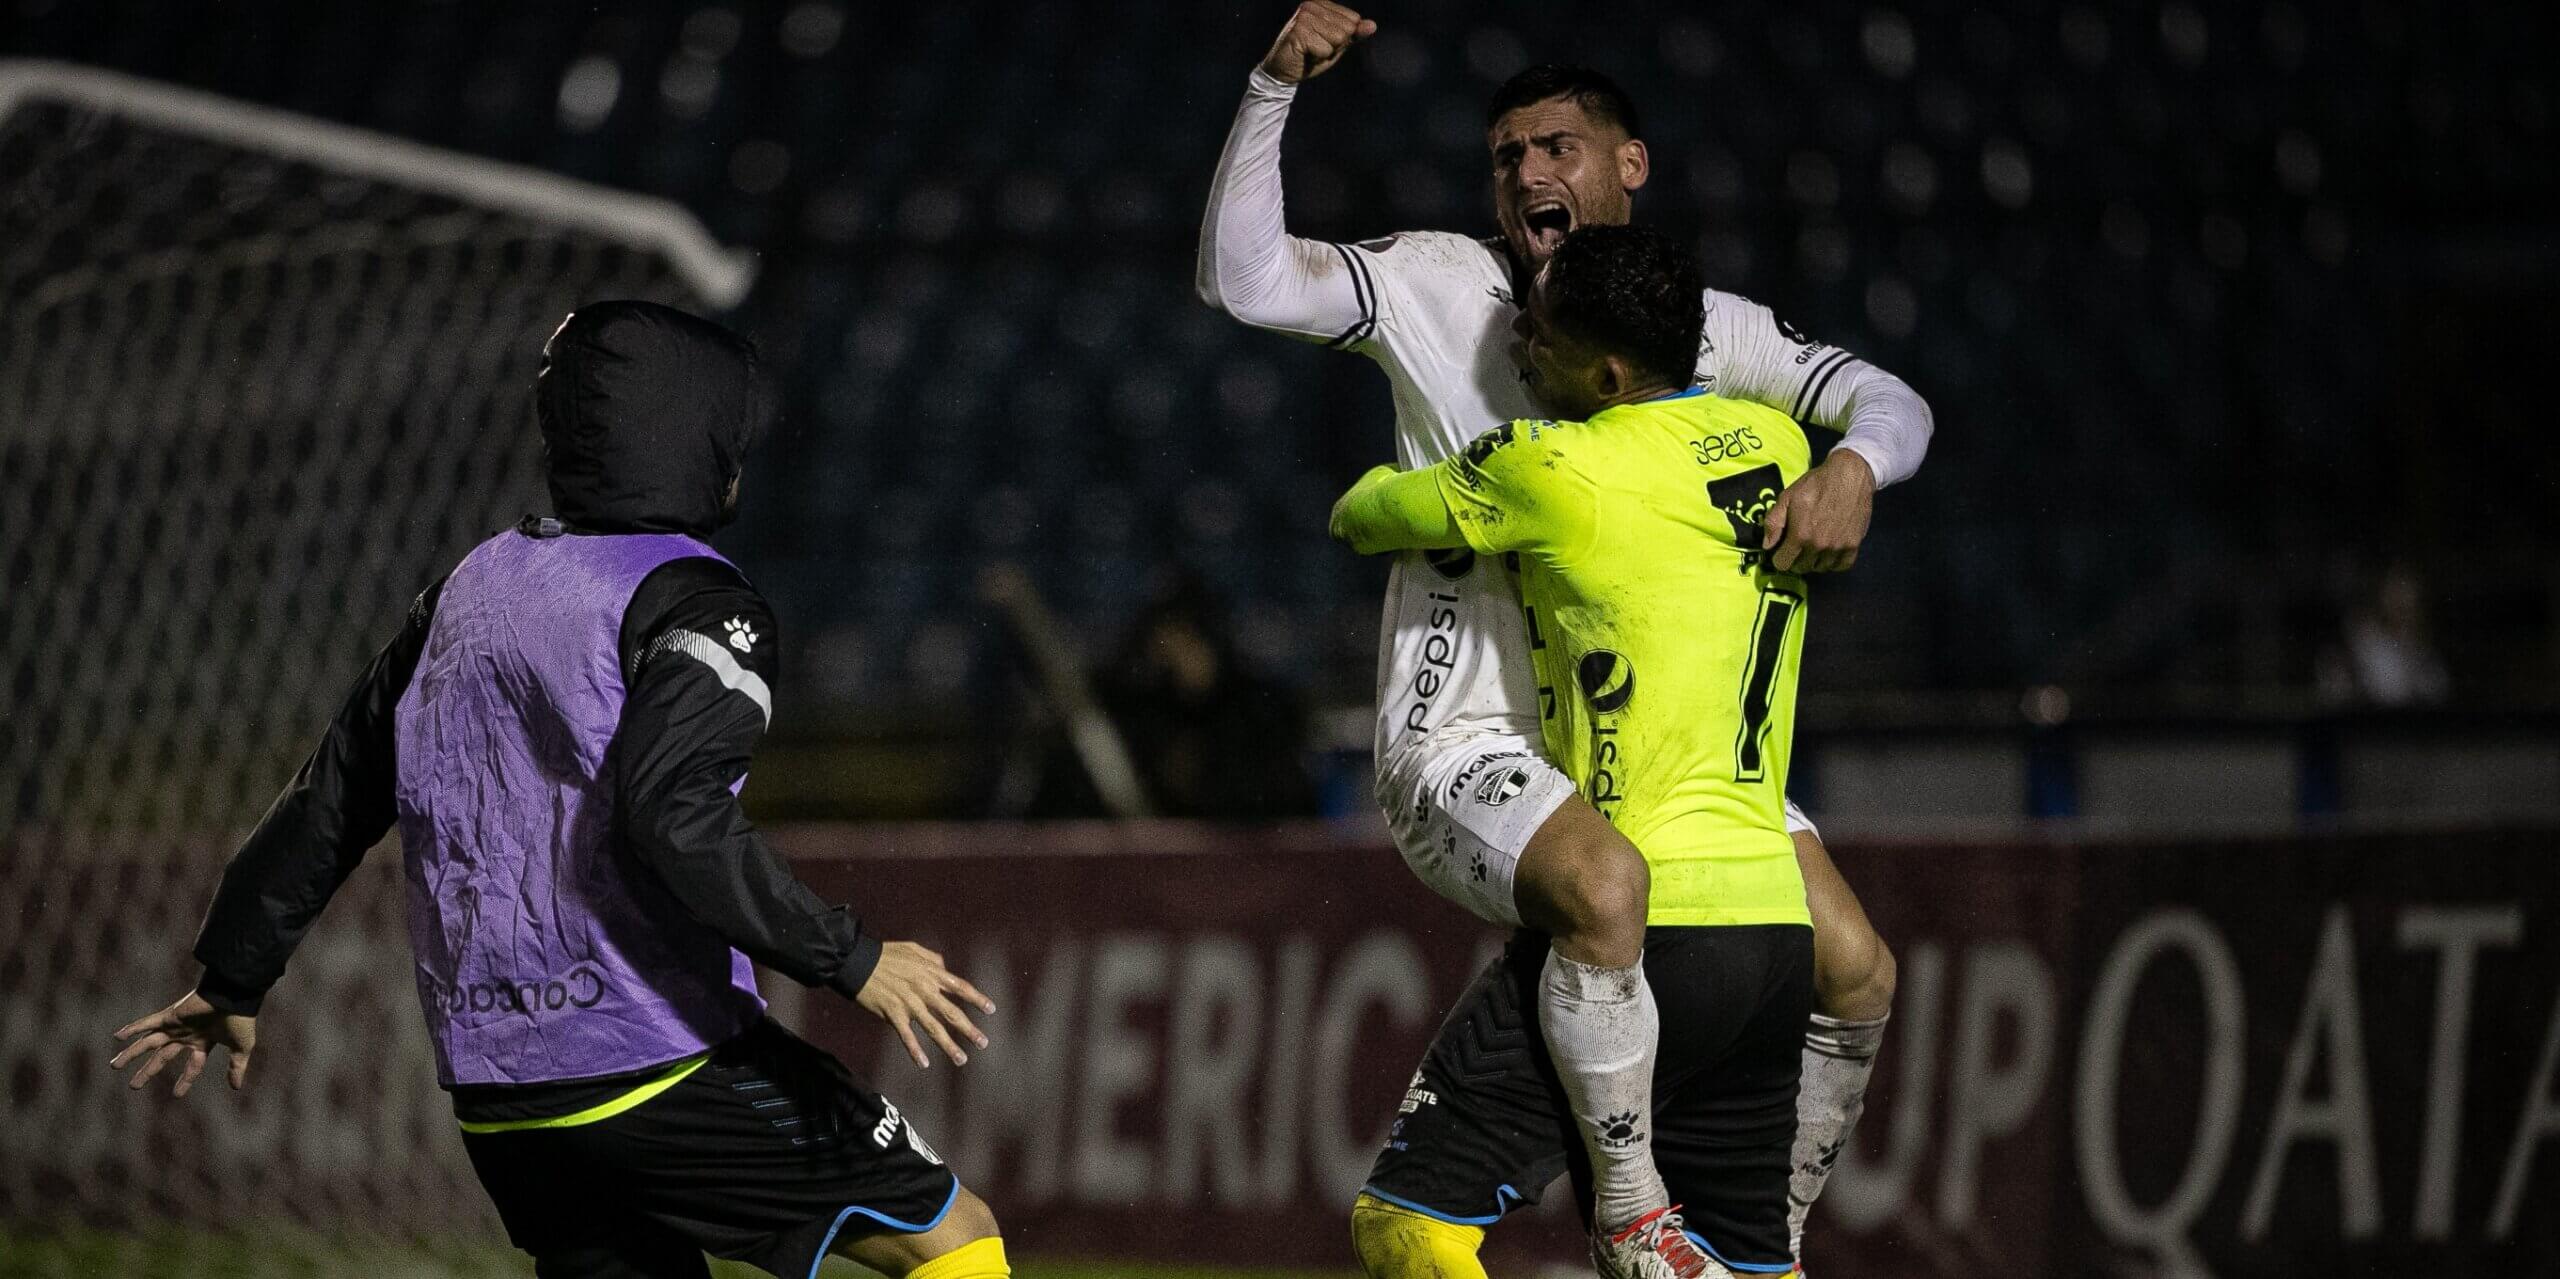 Real Estelí empató 2-2 con Independiente y clasificó a la final de la Copa  Centroamericana 2023, Deportes